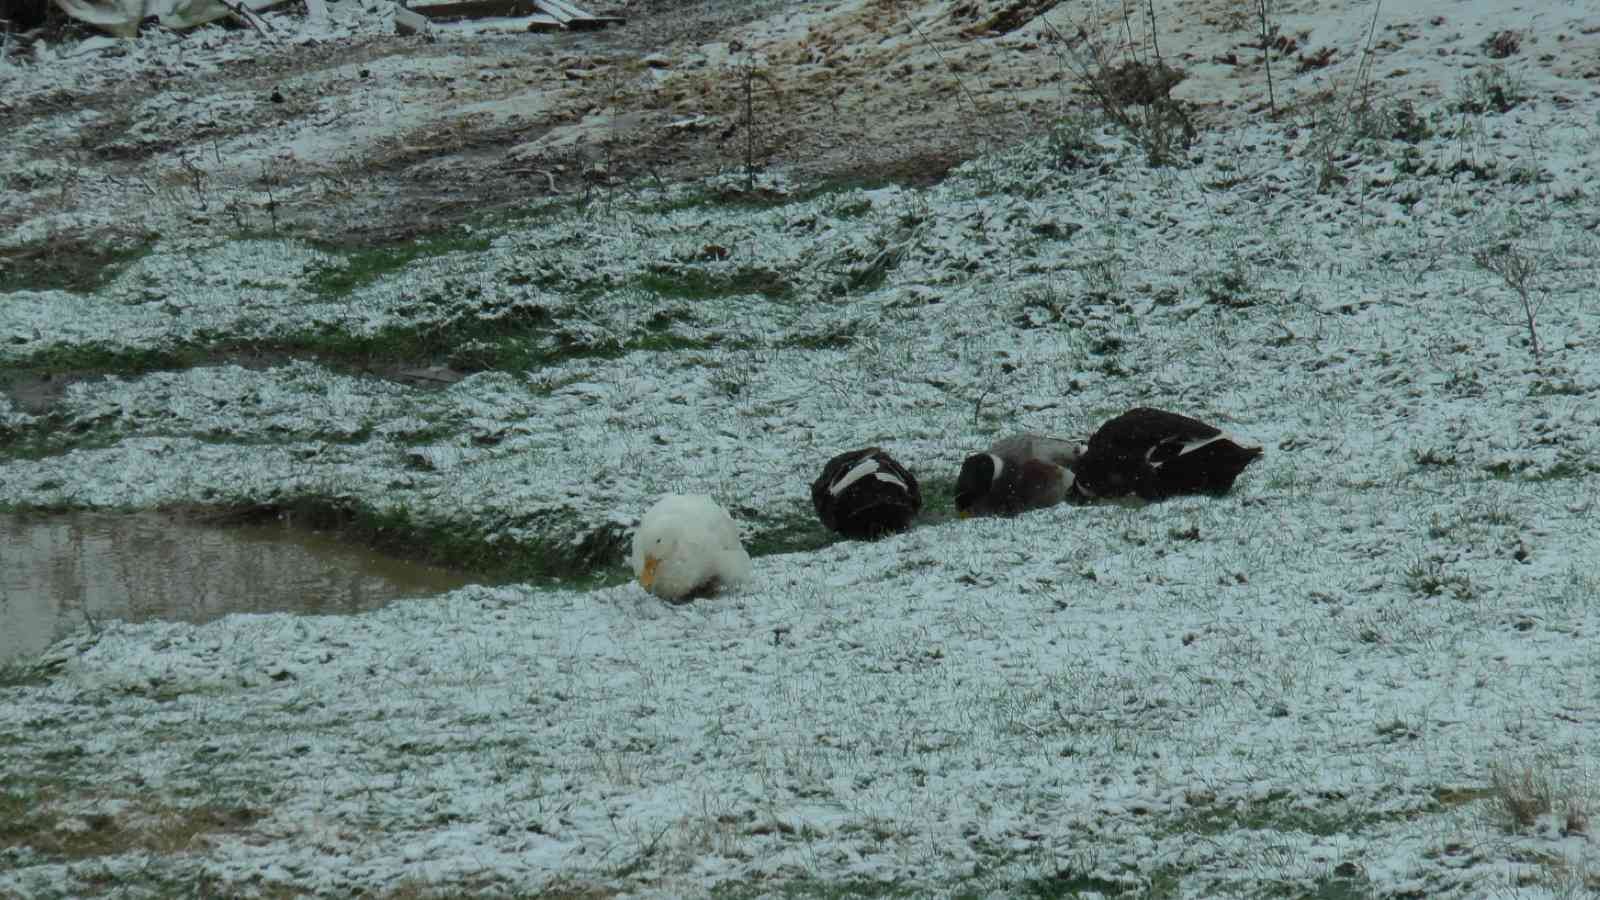 Kartal Aydos’ta kar yağışı başladı, tadını ördekler çıkardı #istanbul